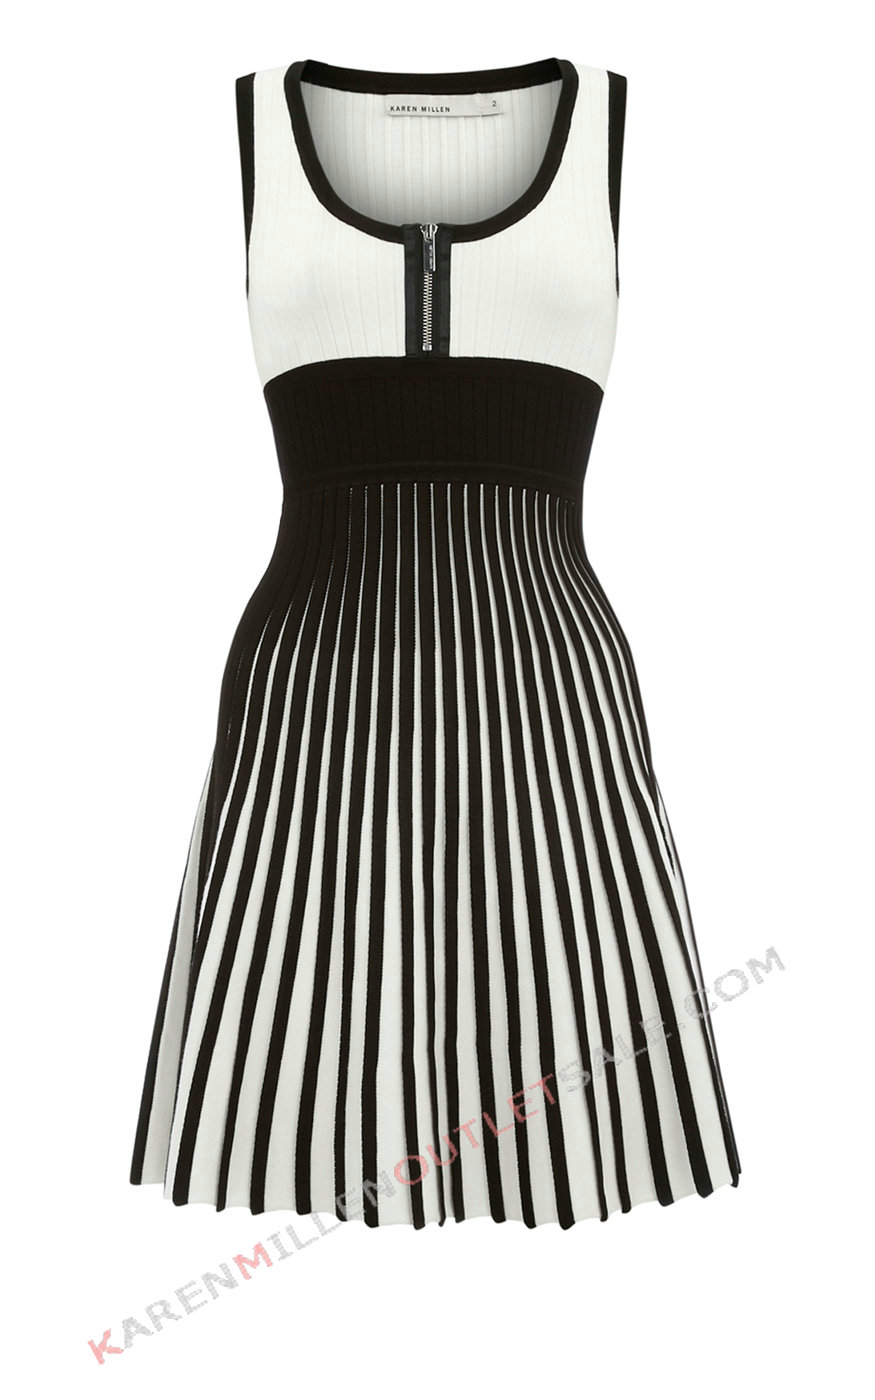 Karen Millen Black And White Thin Waist Zipper Dress